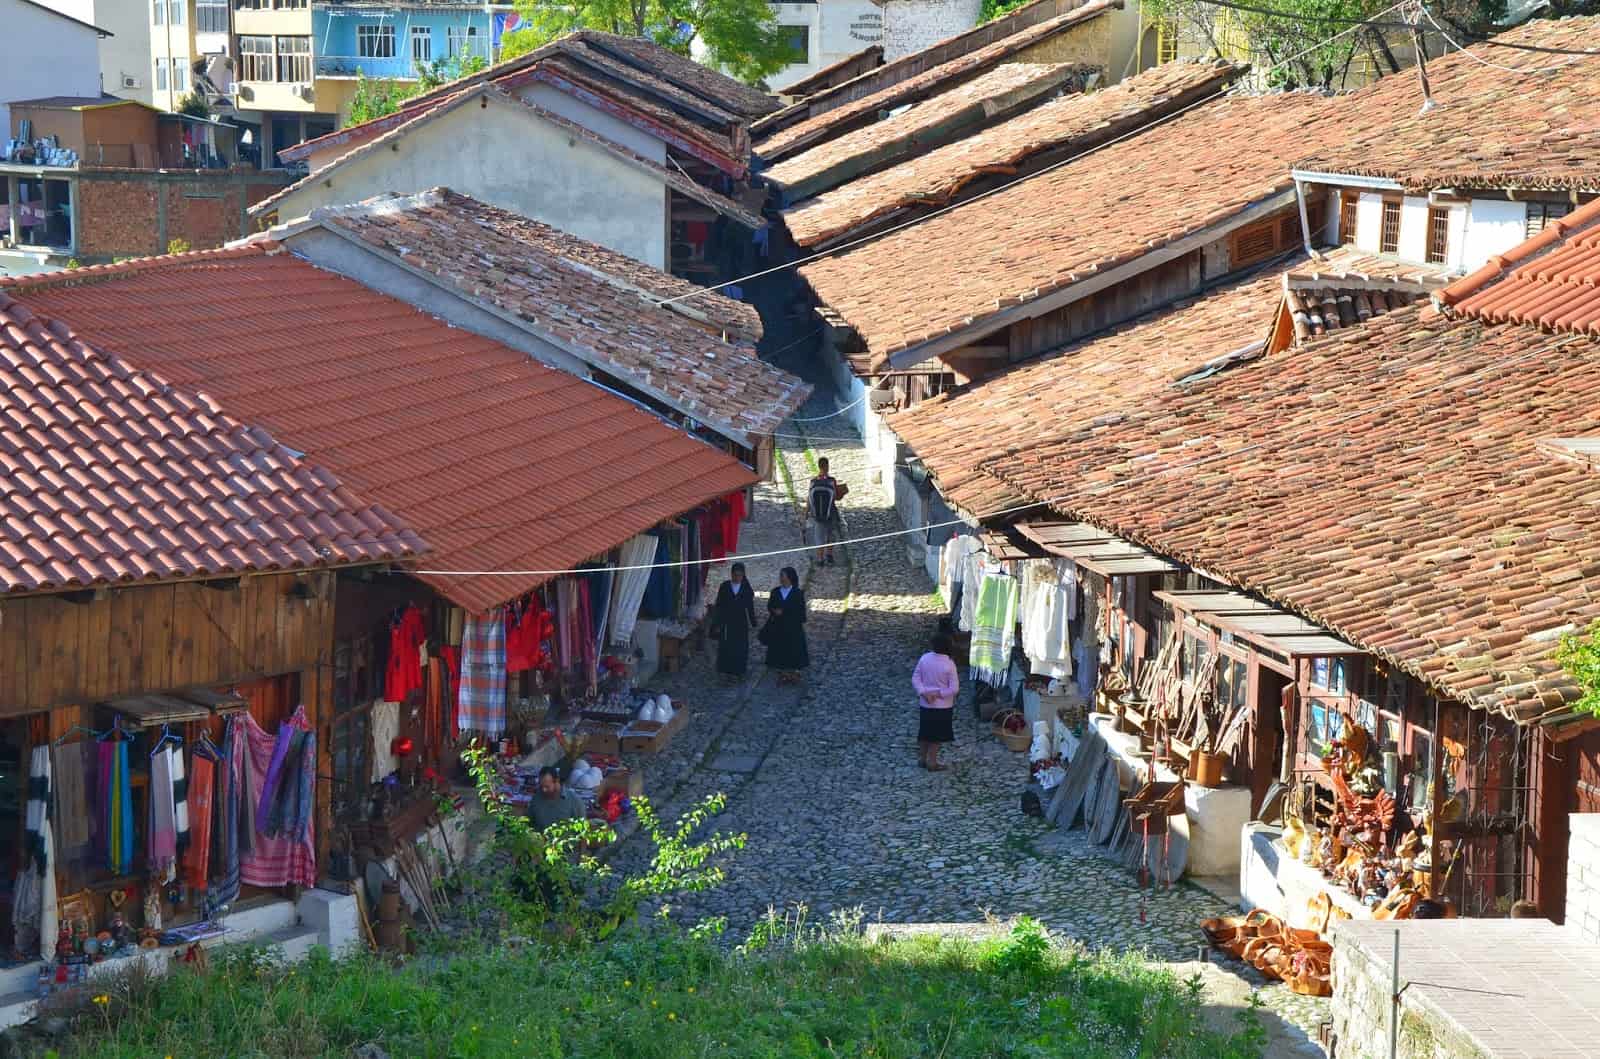 Old Bazaar in Krujë, Albania